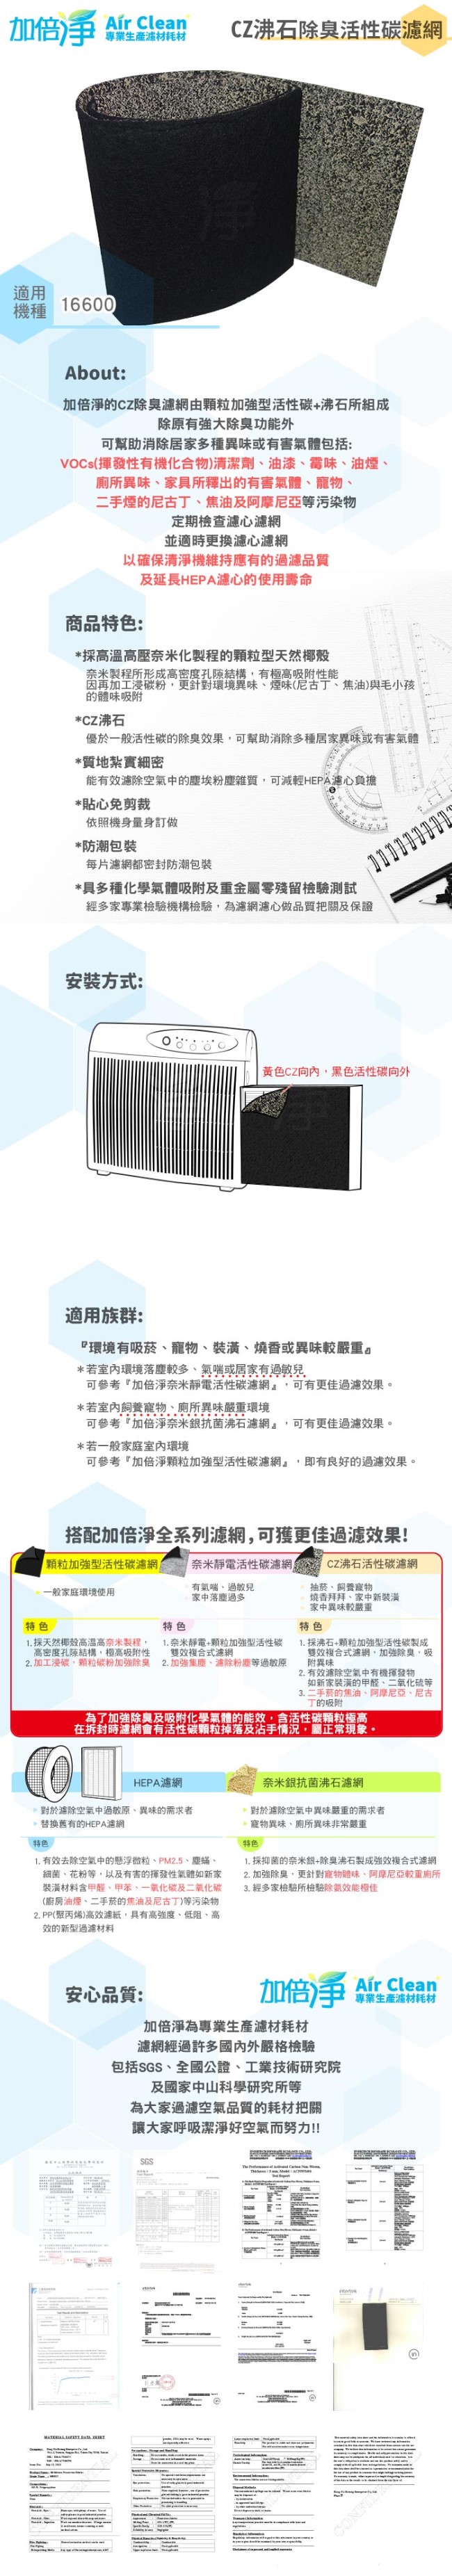 加倍淨 CZ沸石除臭活性碳濾網 適用16600 honeywell空氣清靜機 (10入)